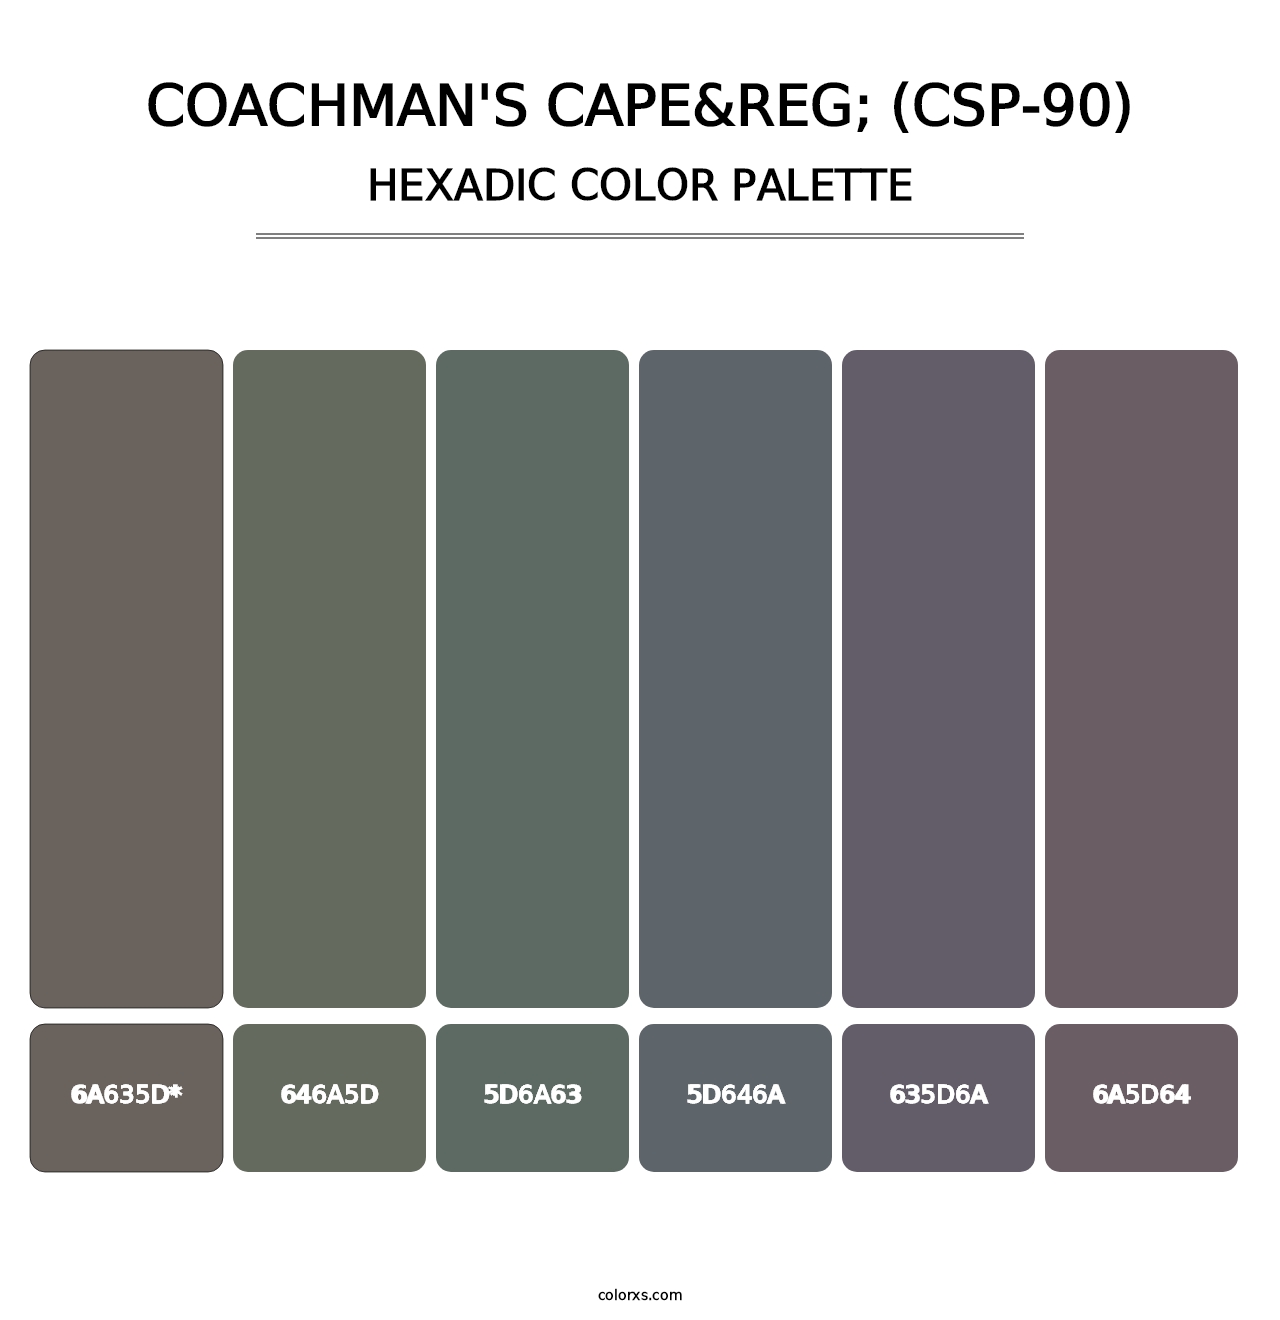 Coachman's Cape&reg; (CSP-90) - Hexadic Color Palette